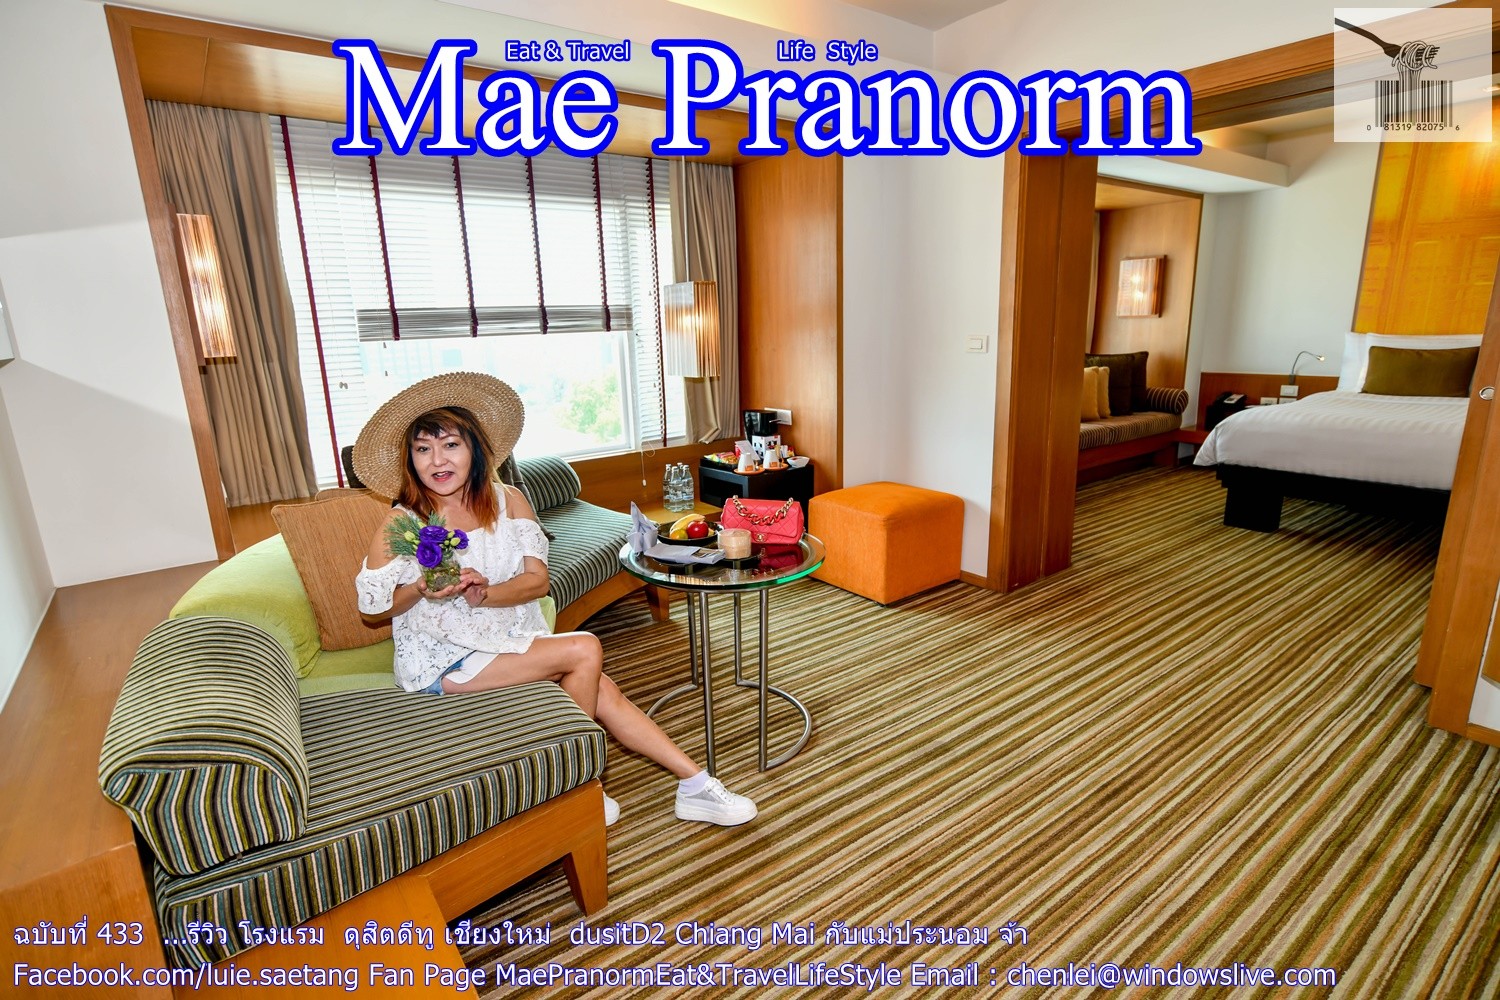 รีวิว โรงแรม ดุสิตดีทู เชียงใหม่ Dusitd2 Chiang Mai  โรงแรมเก๋ๆใจกลางไนท์บาซาร์เชียงใหม่ กับแม่ประนอม จ้า - Pantip